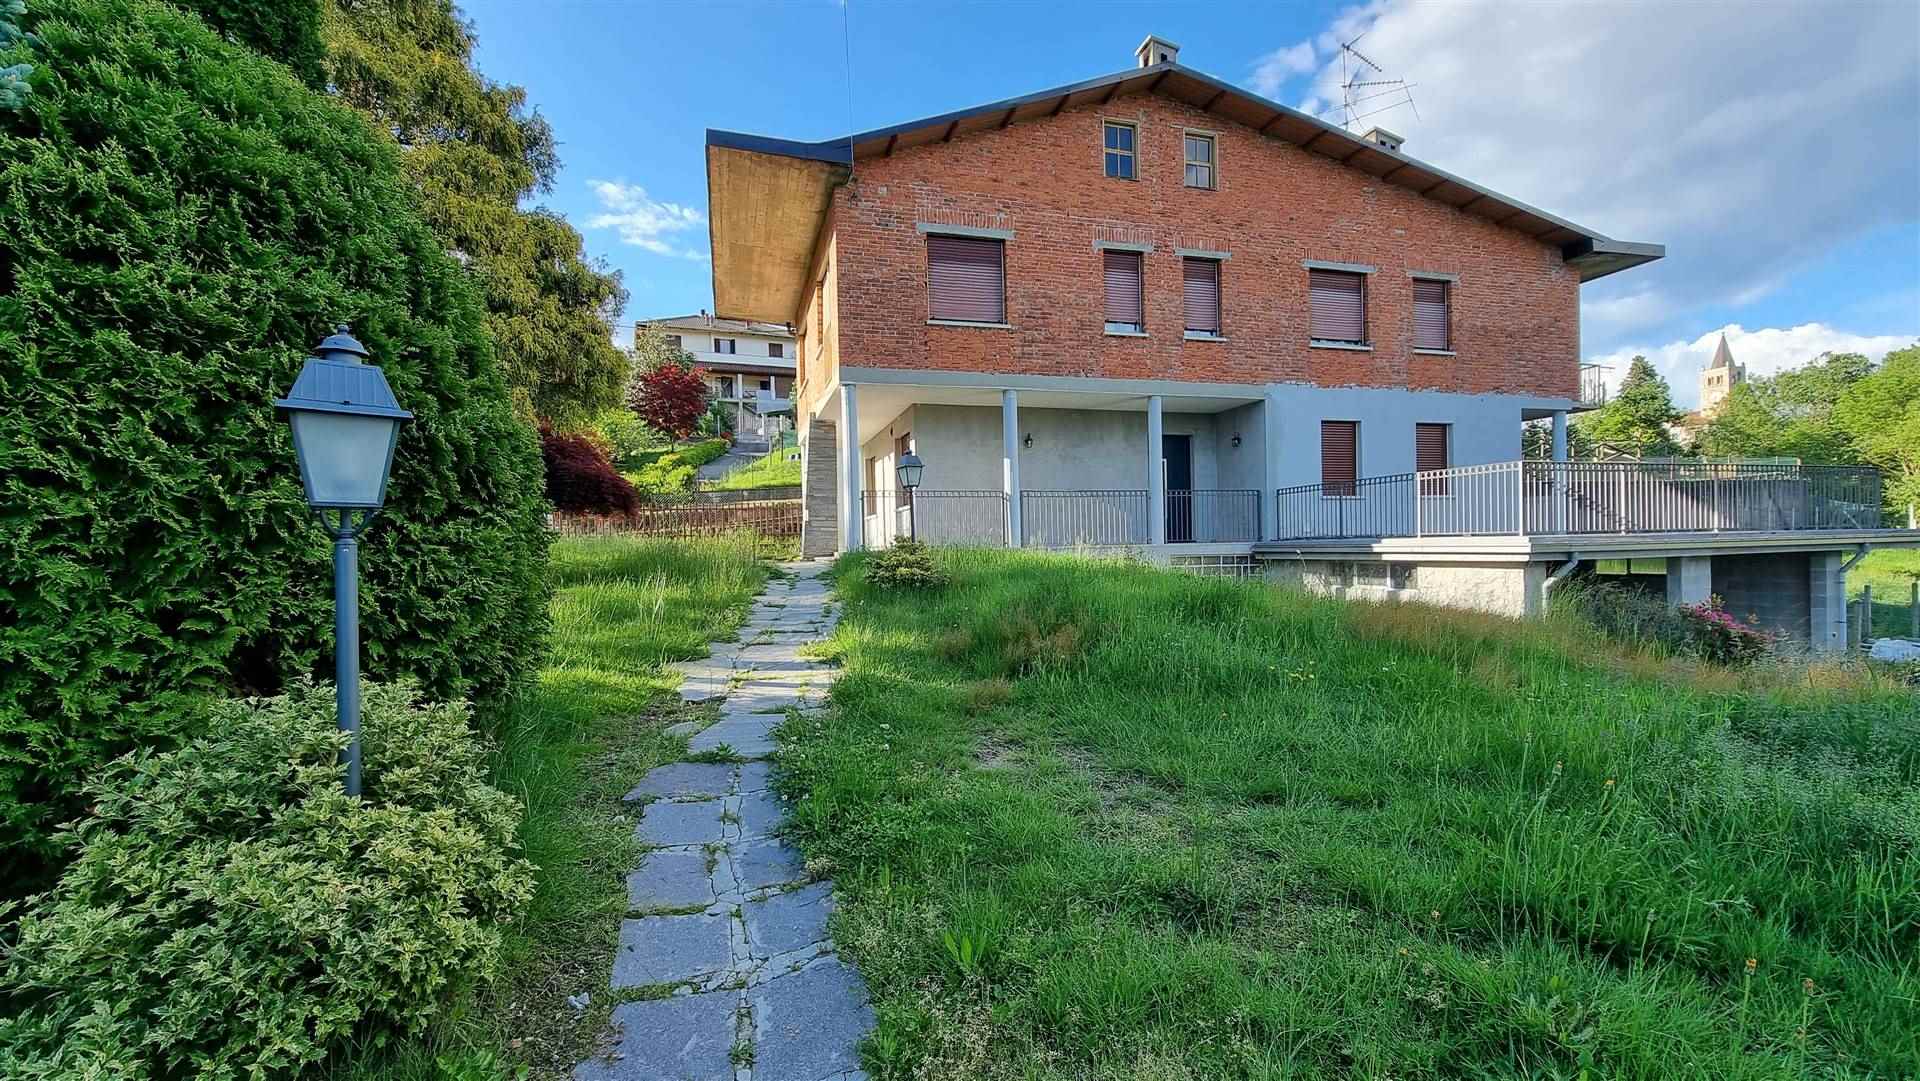 Villa Bifamiliare in vendita a Mezzana Mortigliengo, 8 locali, prezzo € 139.000 | PortaleAgenzieImmobiliari.it